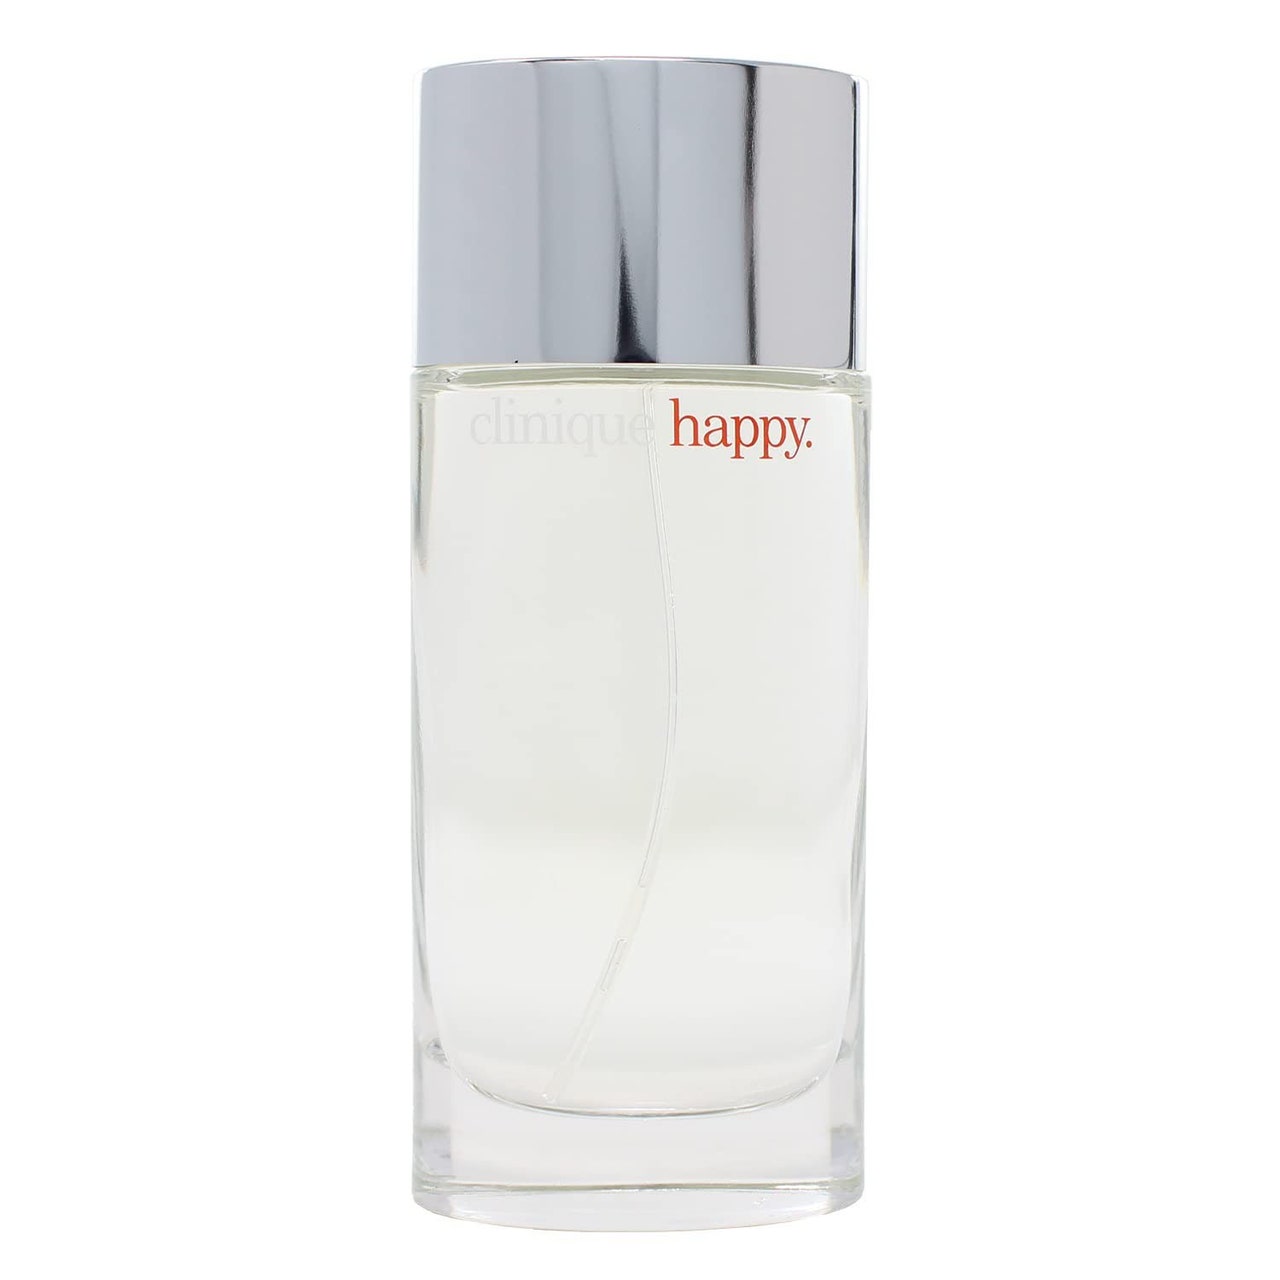 Clinique Happy Eau de Parfum Sprühflasche mit silberner Kappe auf weißem Hintergrund